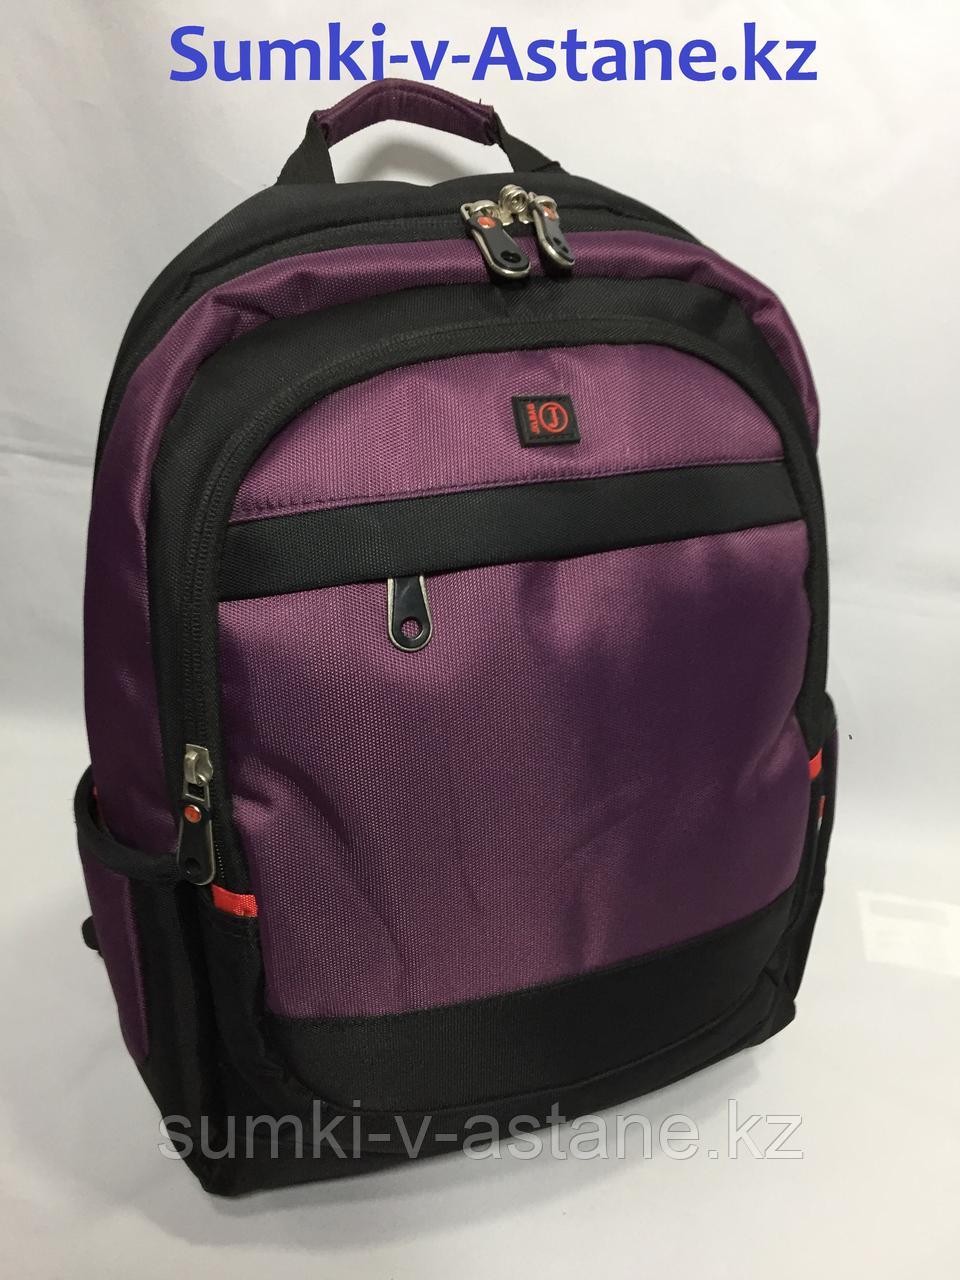 Школьный рюкзак для первоклассника (высота 37 см, ширина 23 см, глубина 14 см)